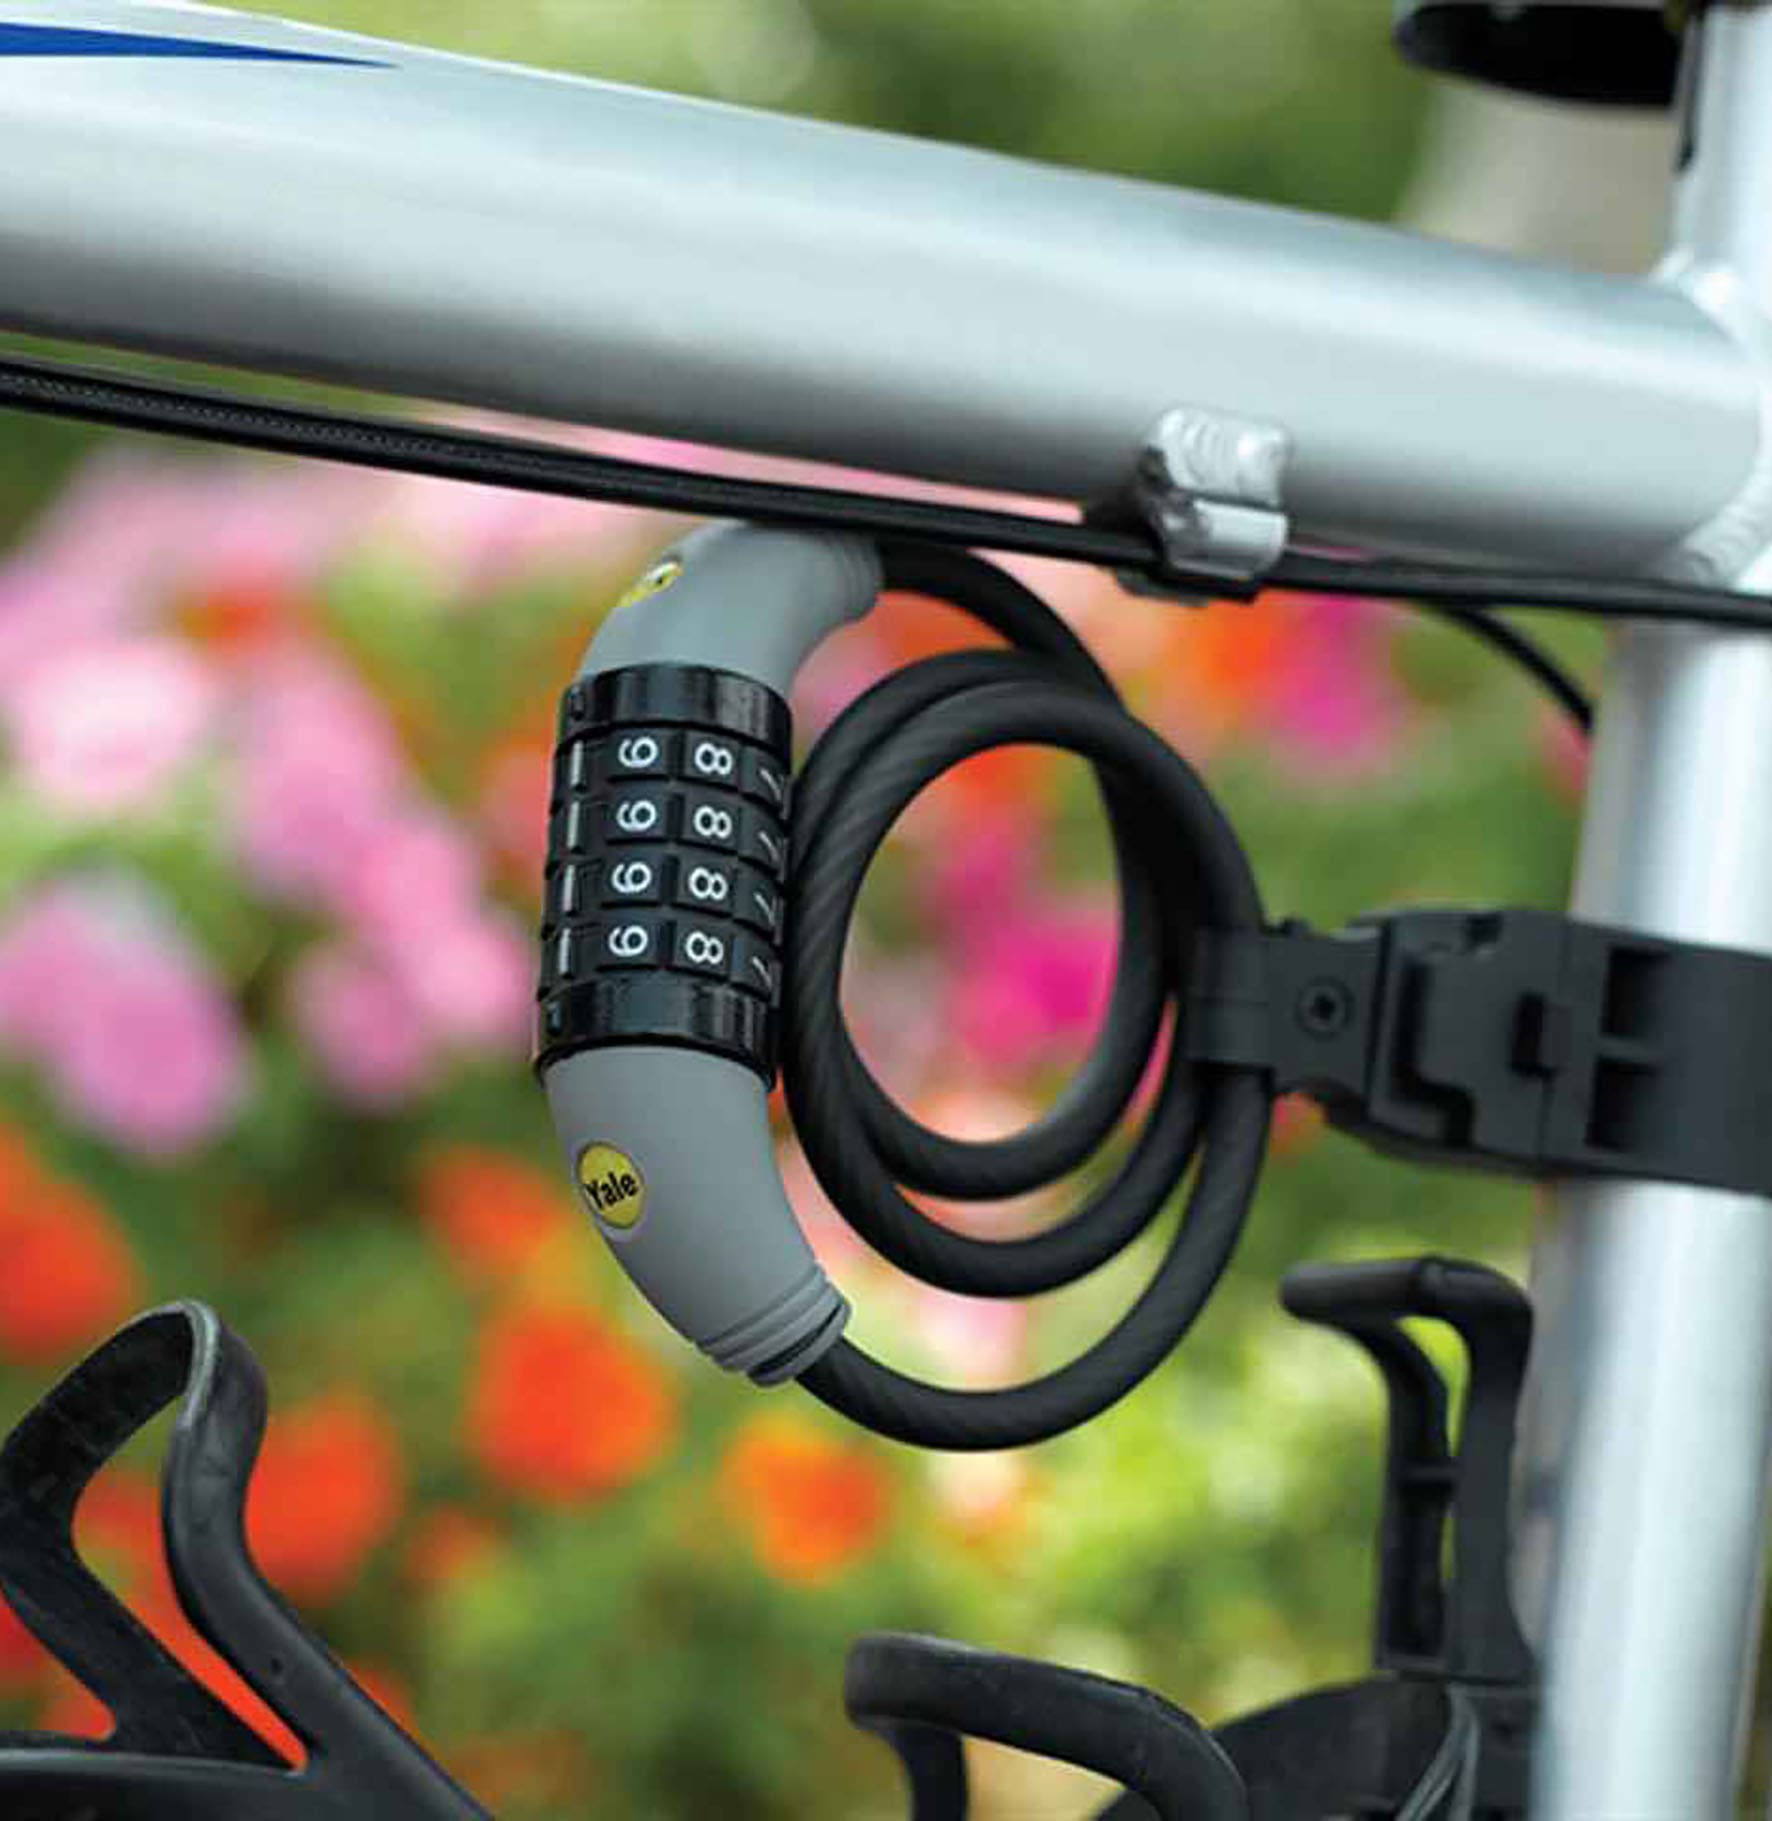 Candados de bicicleta: analizamos 8 modelos para proteger tu bici al máximo